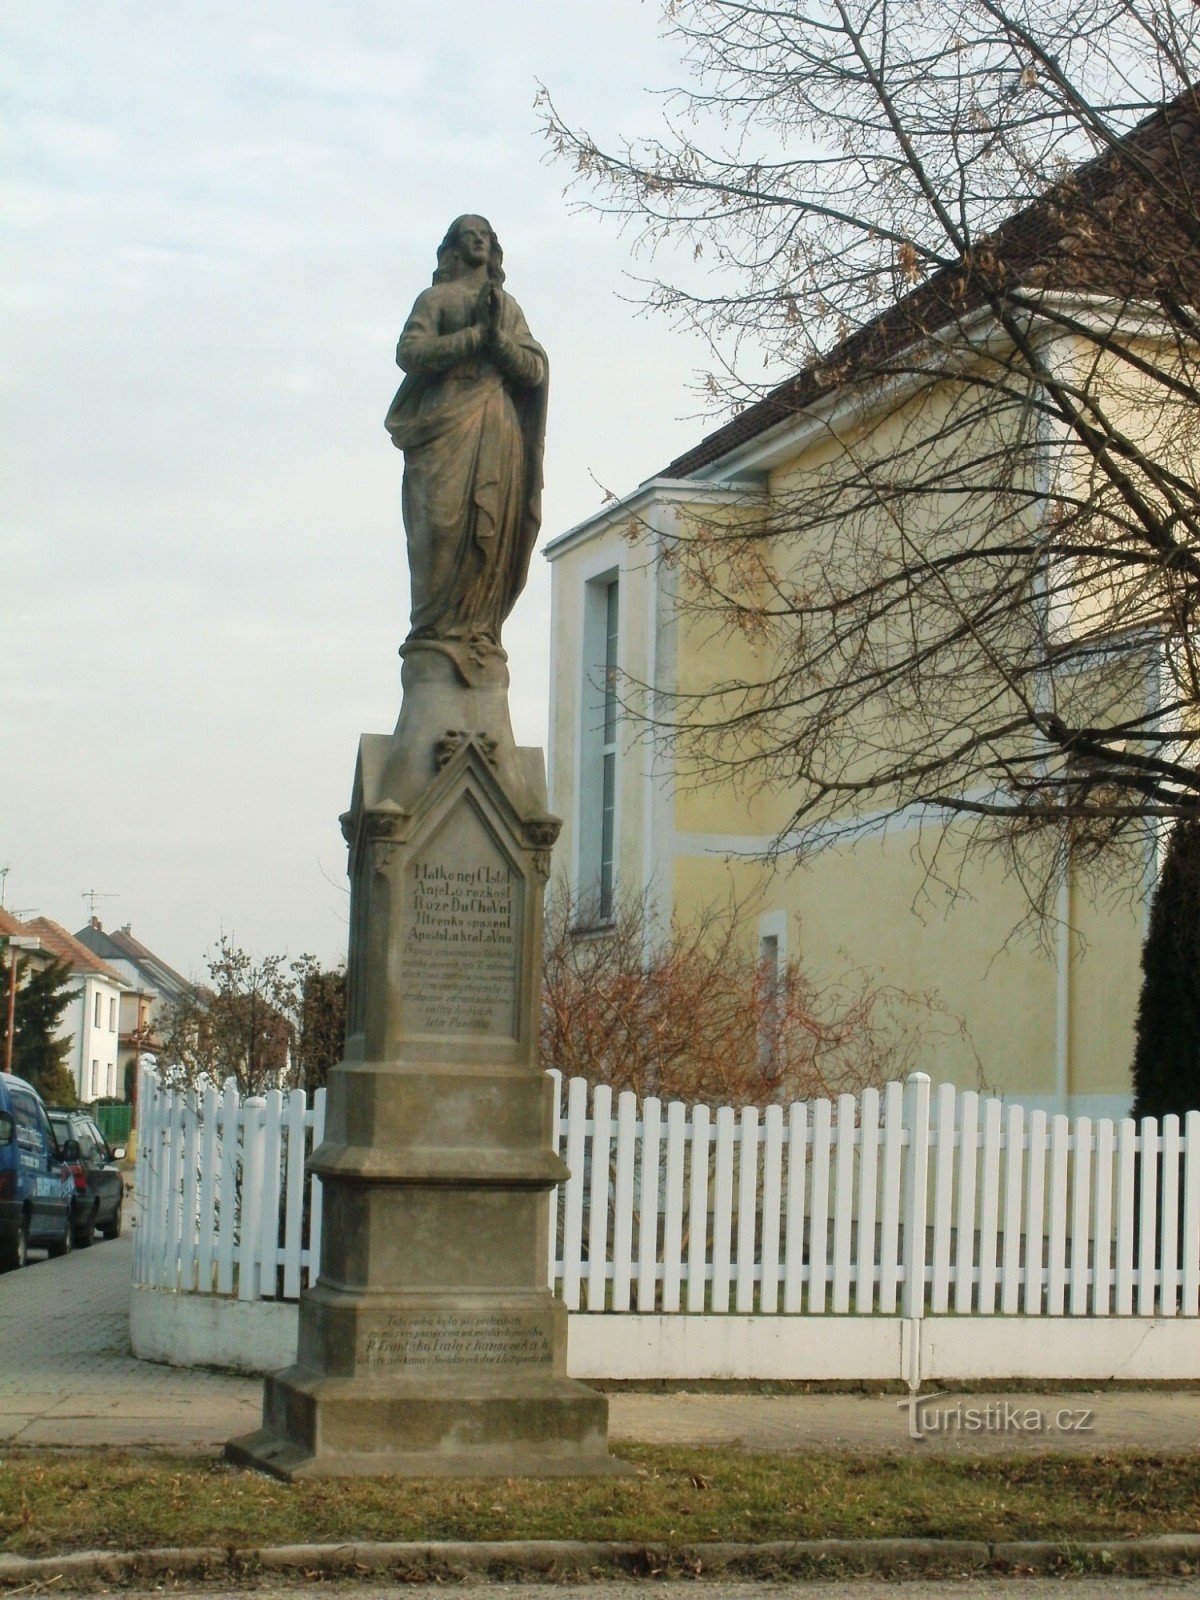 Nový Bydžov - một di tích với bức tượng của St. Mary trinh nữ